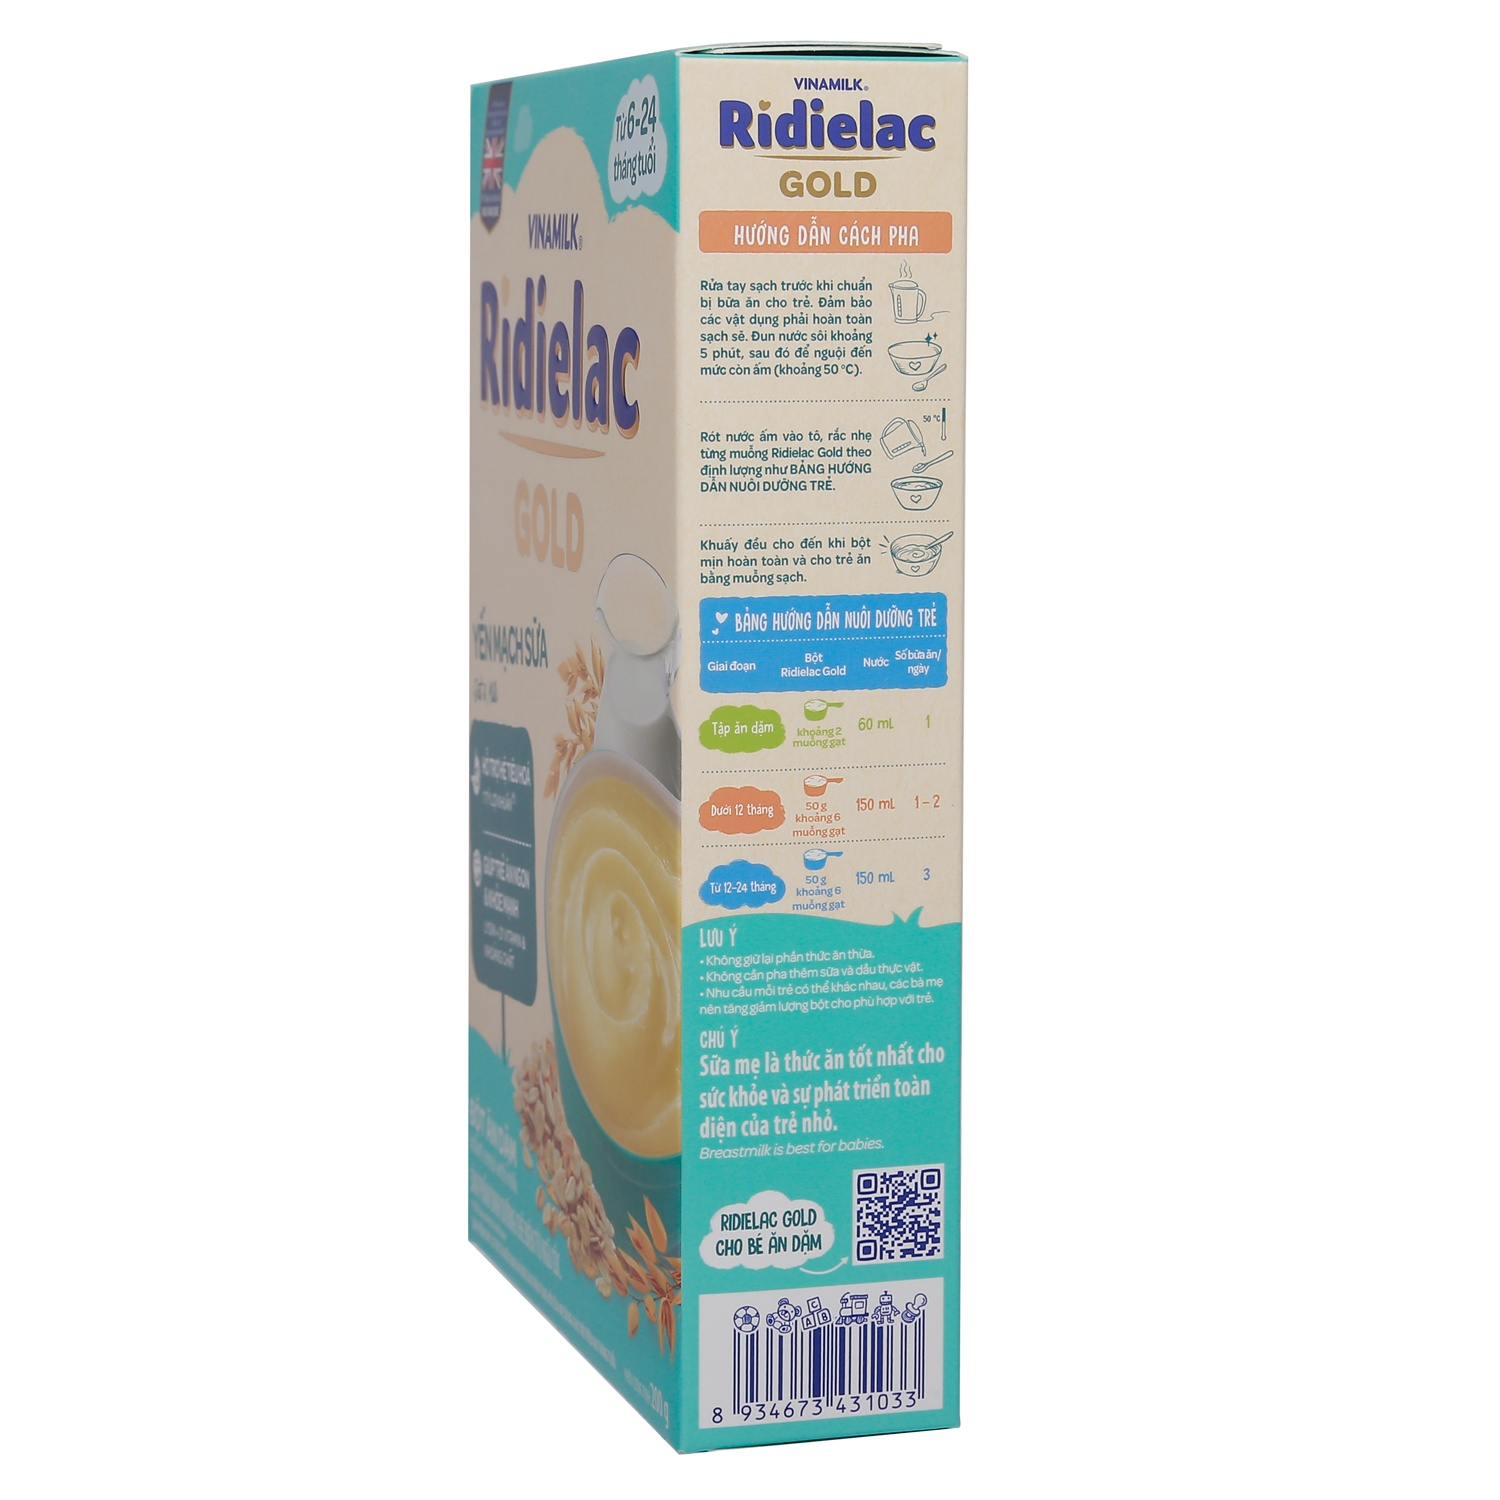 Hướng dẫn cách pha bột ăn dặm Ridielac Gold yến mạch sữa